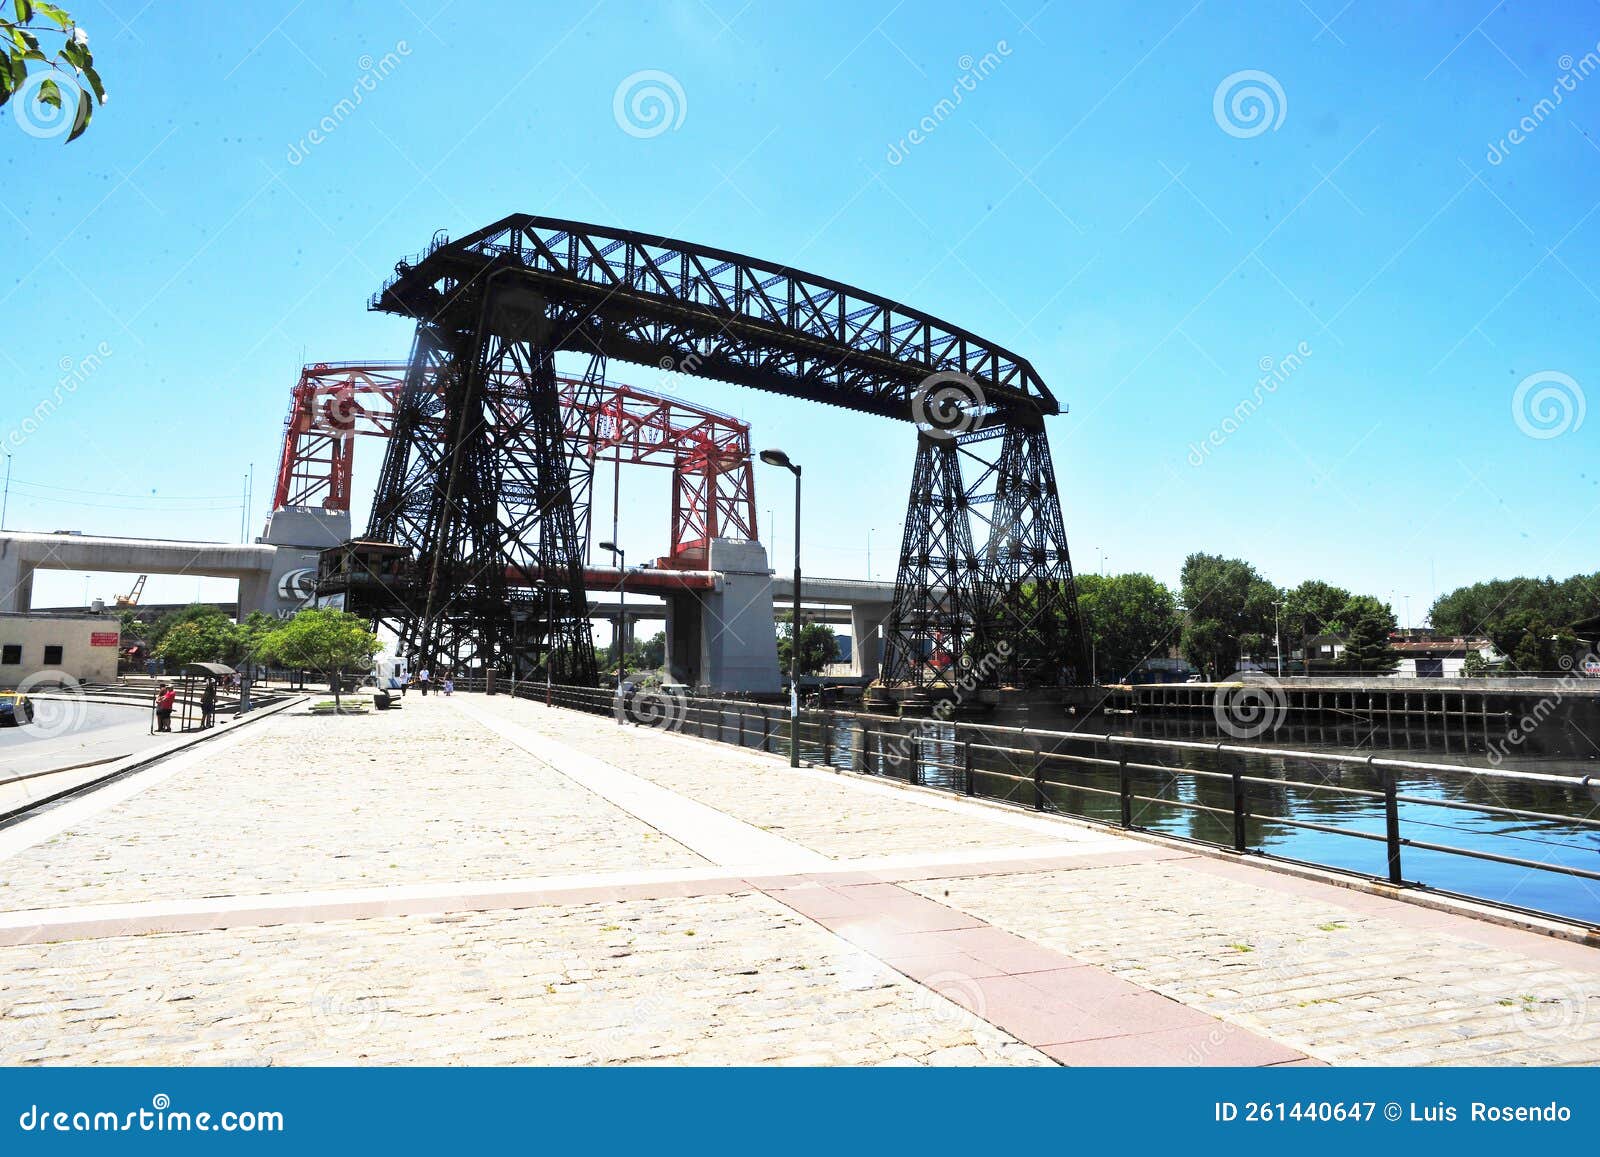 buenos aires argentina - old nicolas avellaneda steel bridge across riachuelo in la boca, buenos aires argentina